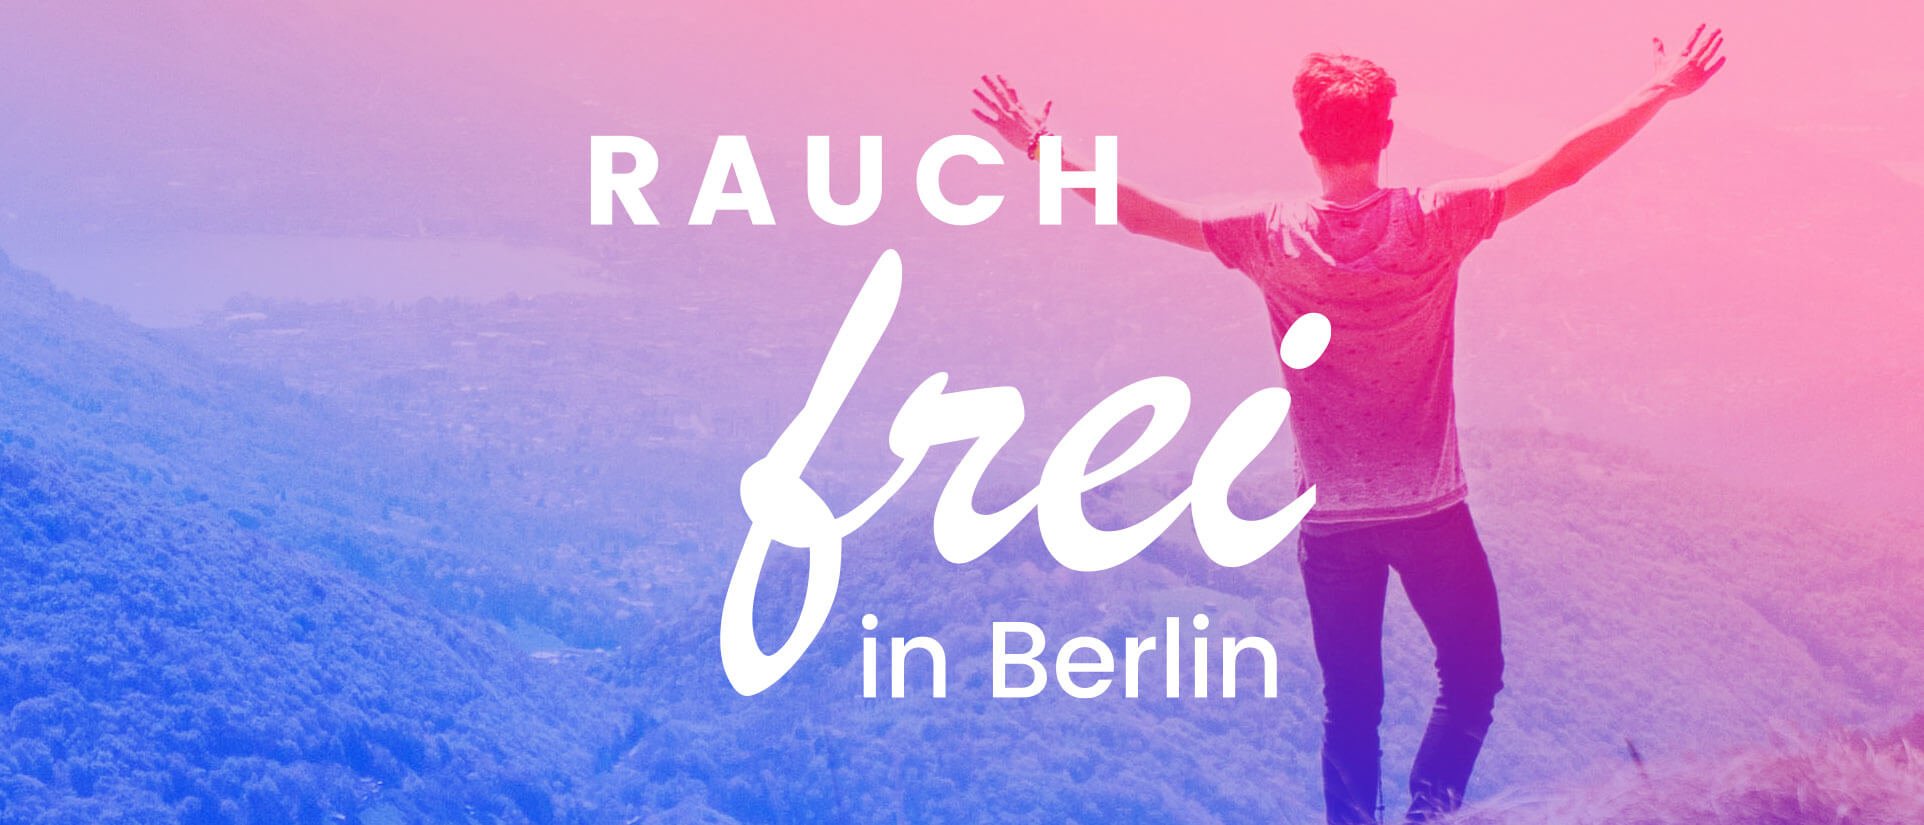 Rauchfrei in Berlin: Design, Plattform, Kampagne — Neue Werte - Agentur für  die neue Zeit